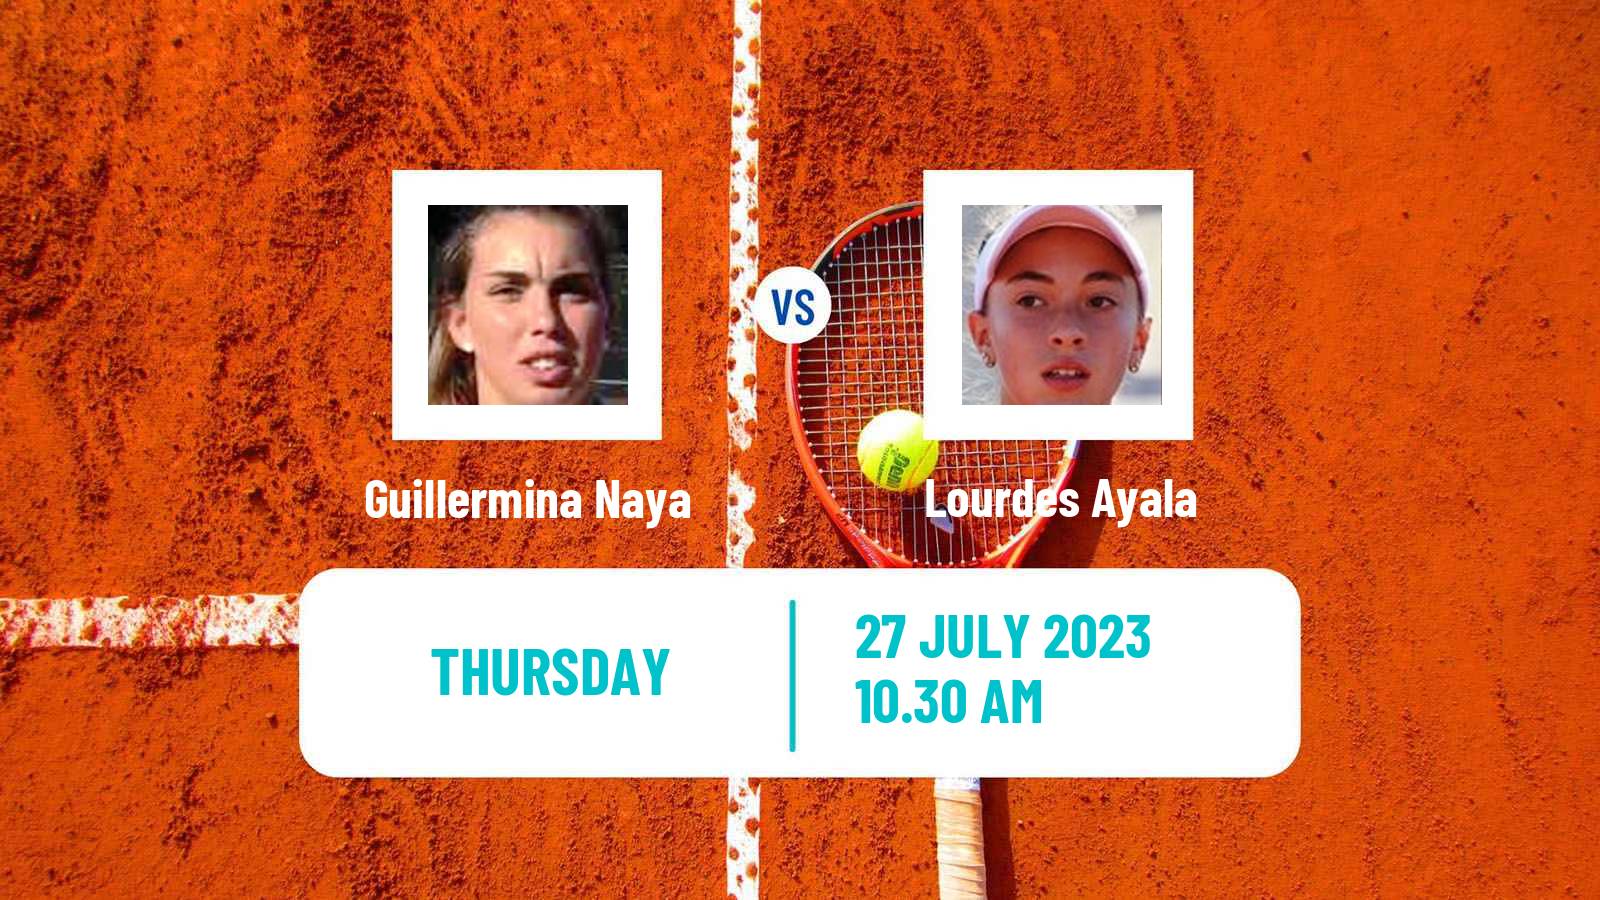 Tennis ITF W25 Bragado Women Guillermina Naya - Lourdes Ayala